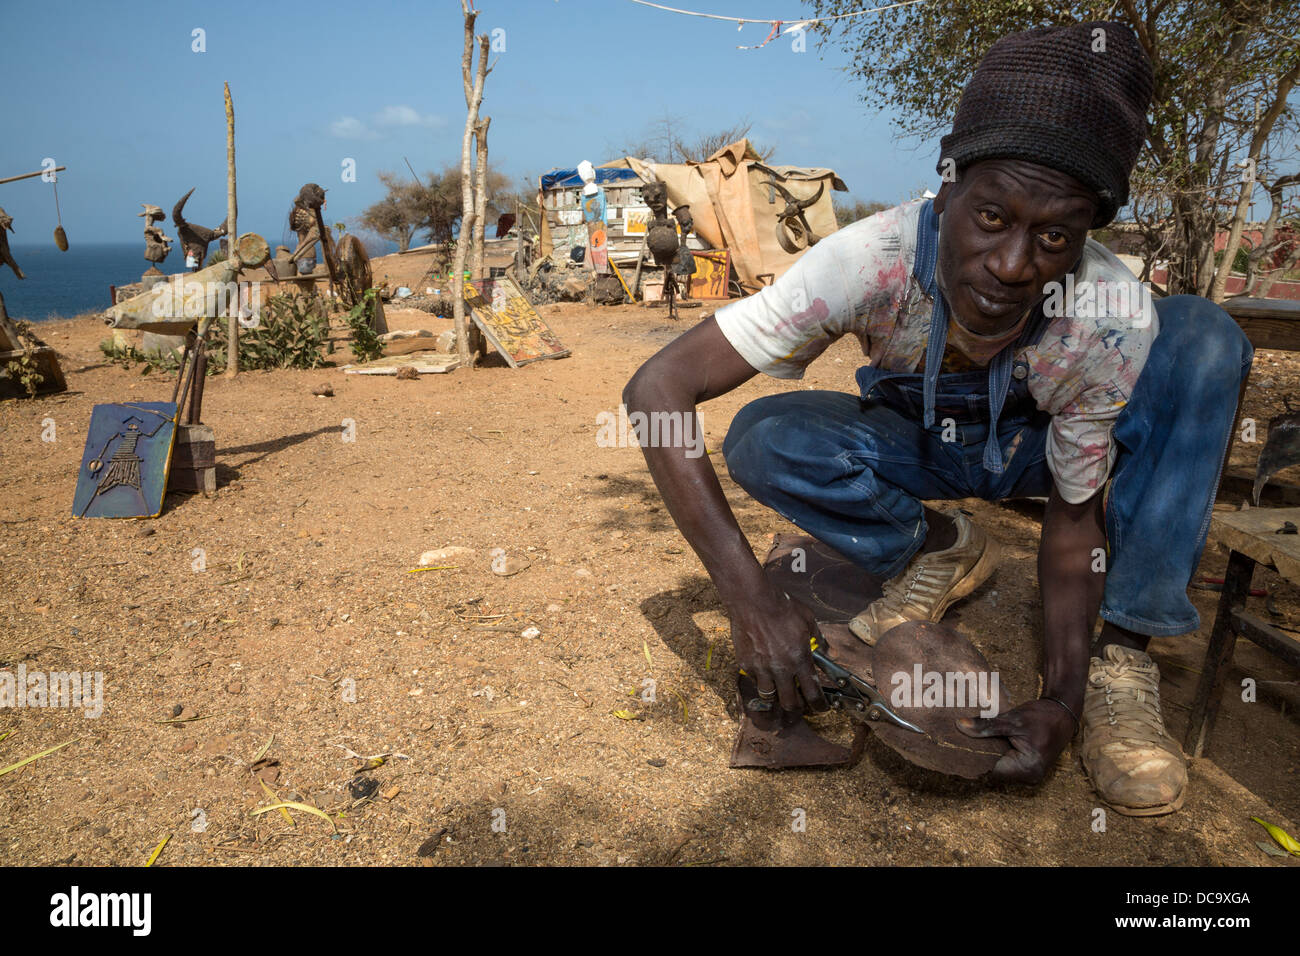 Artiste Amadou Dieng démontrant comment il travaille avec des objets trouvés et récupérés pour faire ses constructions. L'île de Gorée au Sénégal. Banque D'Images